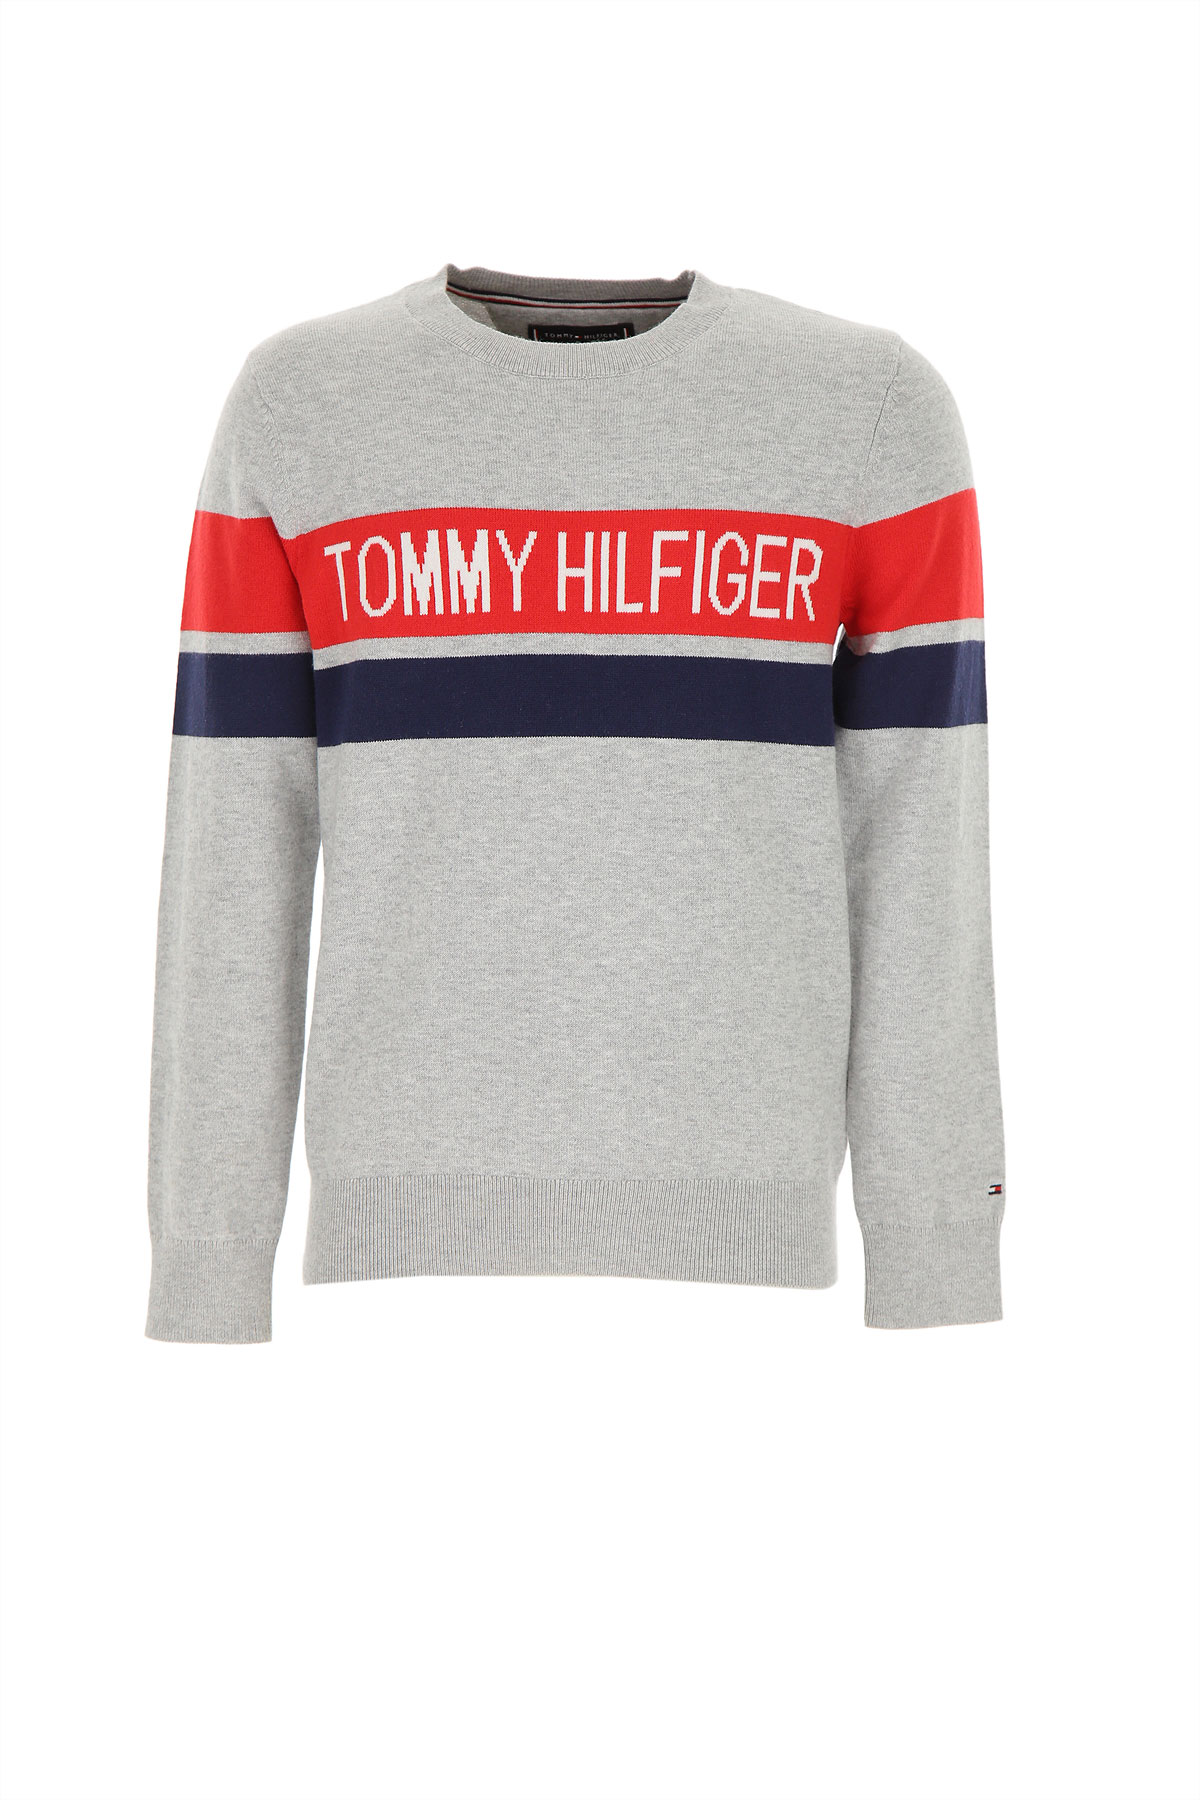 Kidswear Tommy Hilfiger, Style code: kb0kb04248-004-